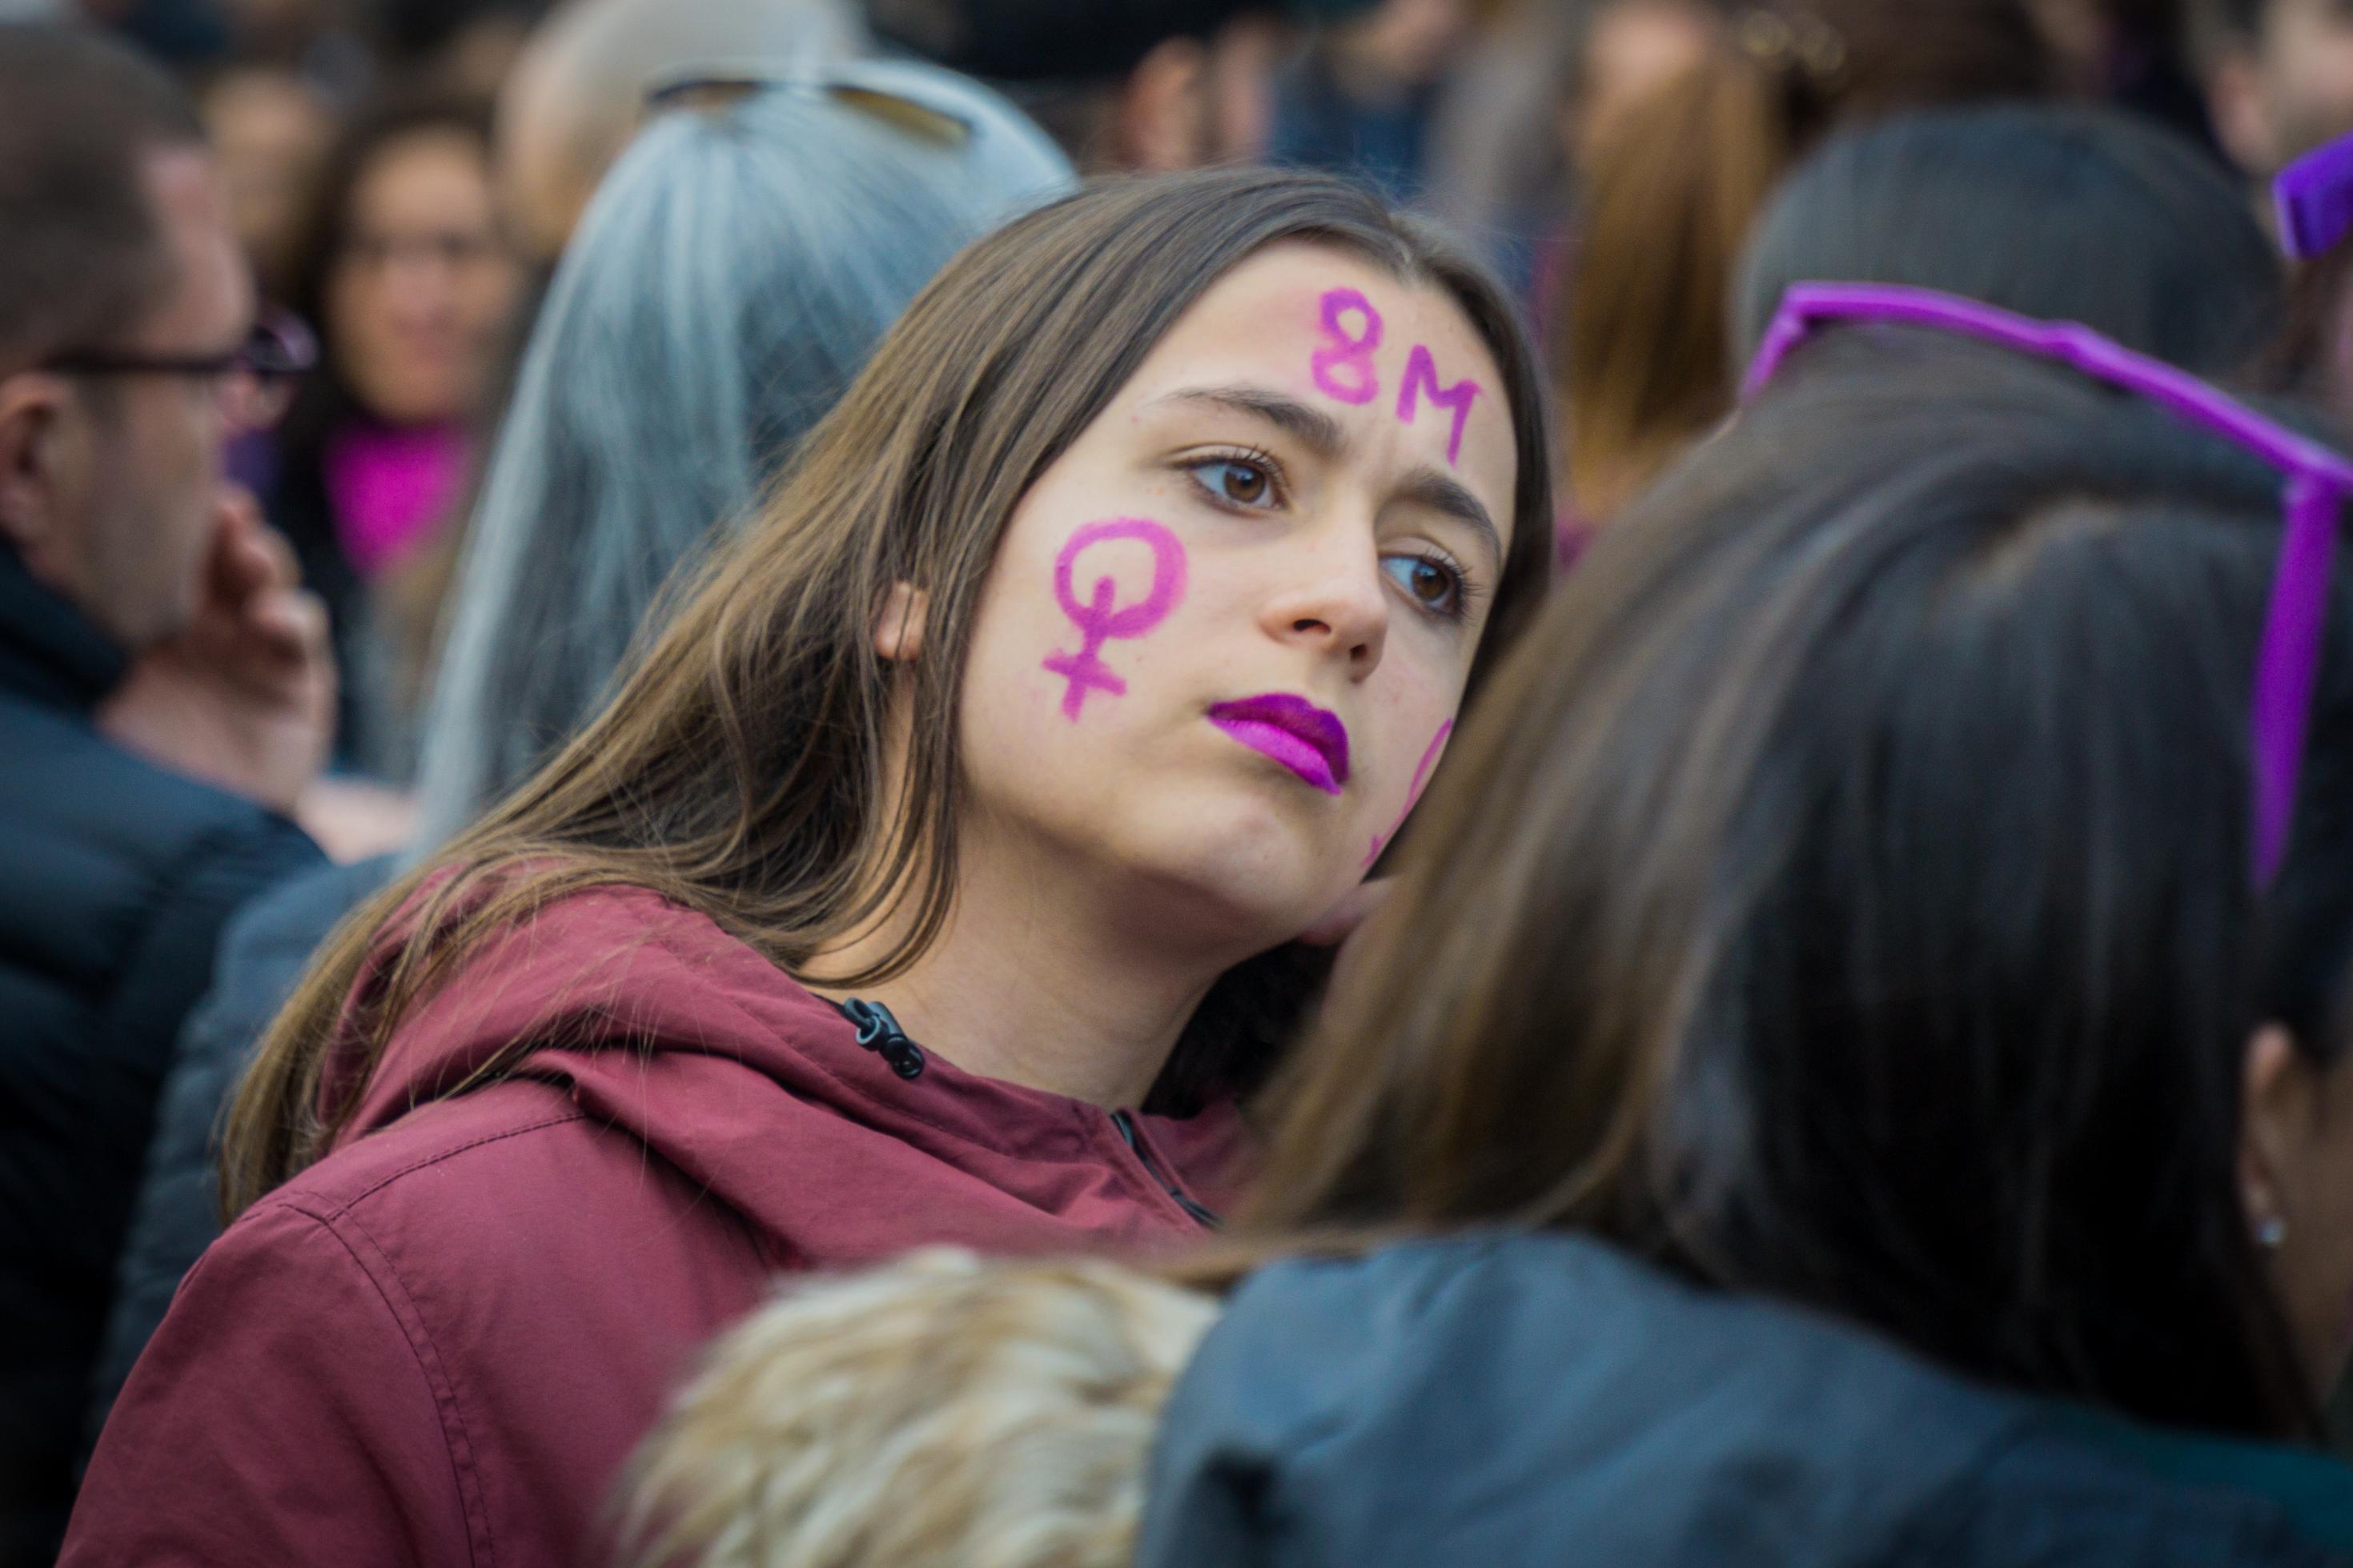 Inmitten einer Menschenmenge blickt eine junge Frau mit Frauenzeichen und 8M auf der Wange und lila geschminkten Lippen entschlossen in die Ferne.